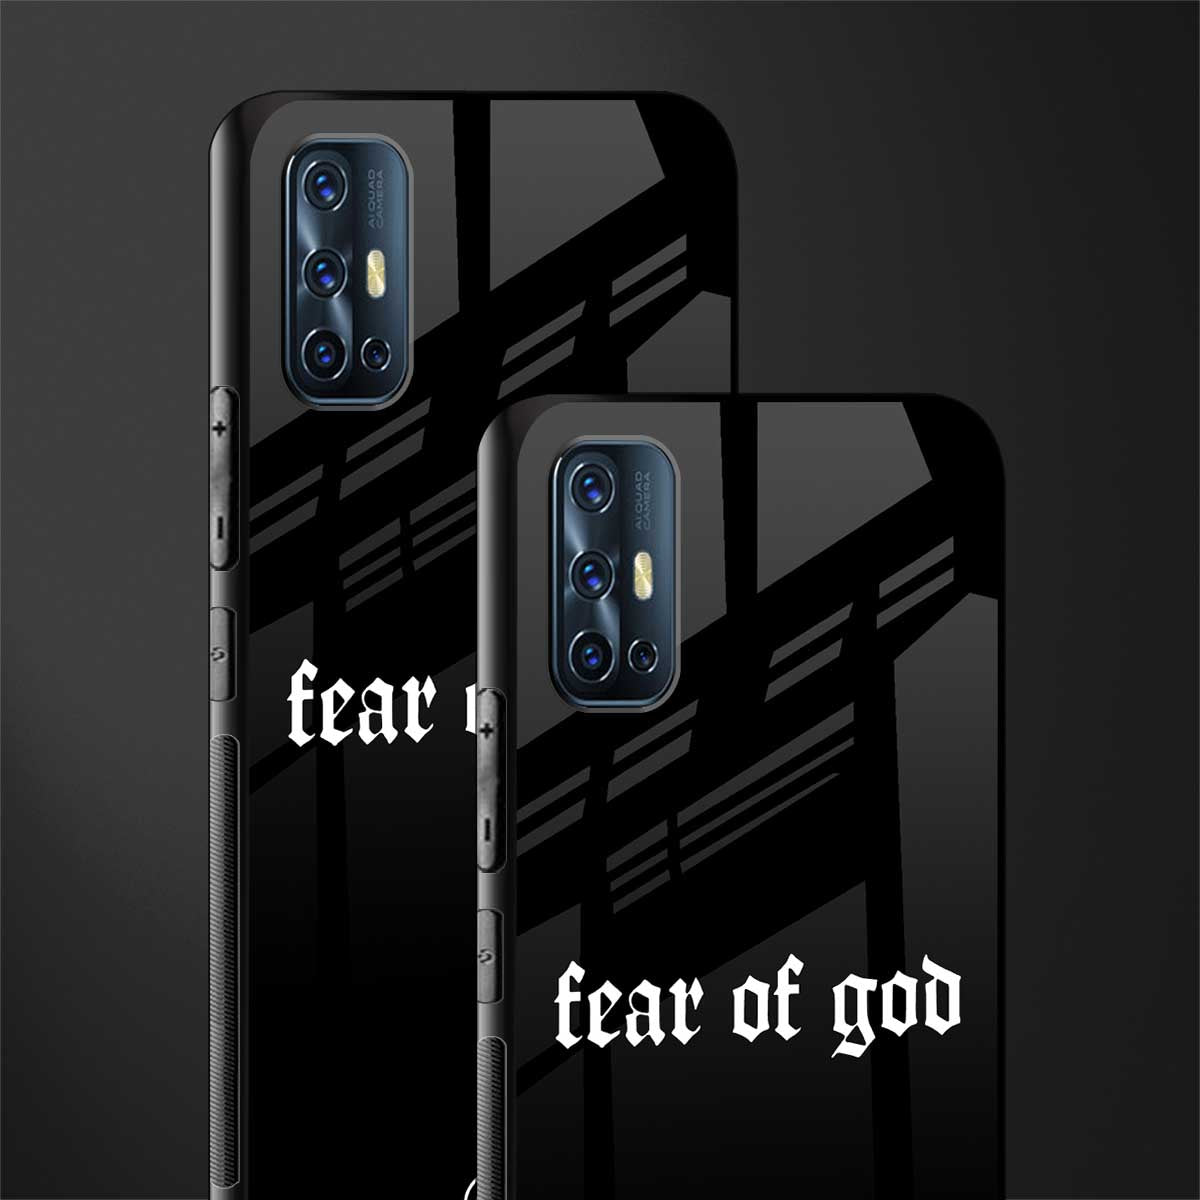 fear of god phone cover for vivo v17